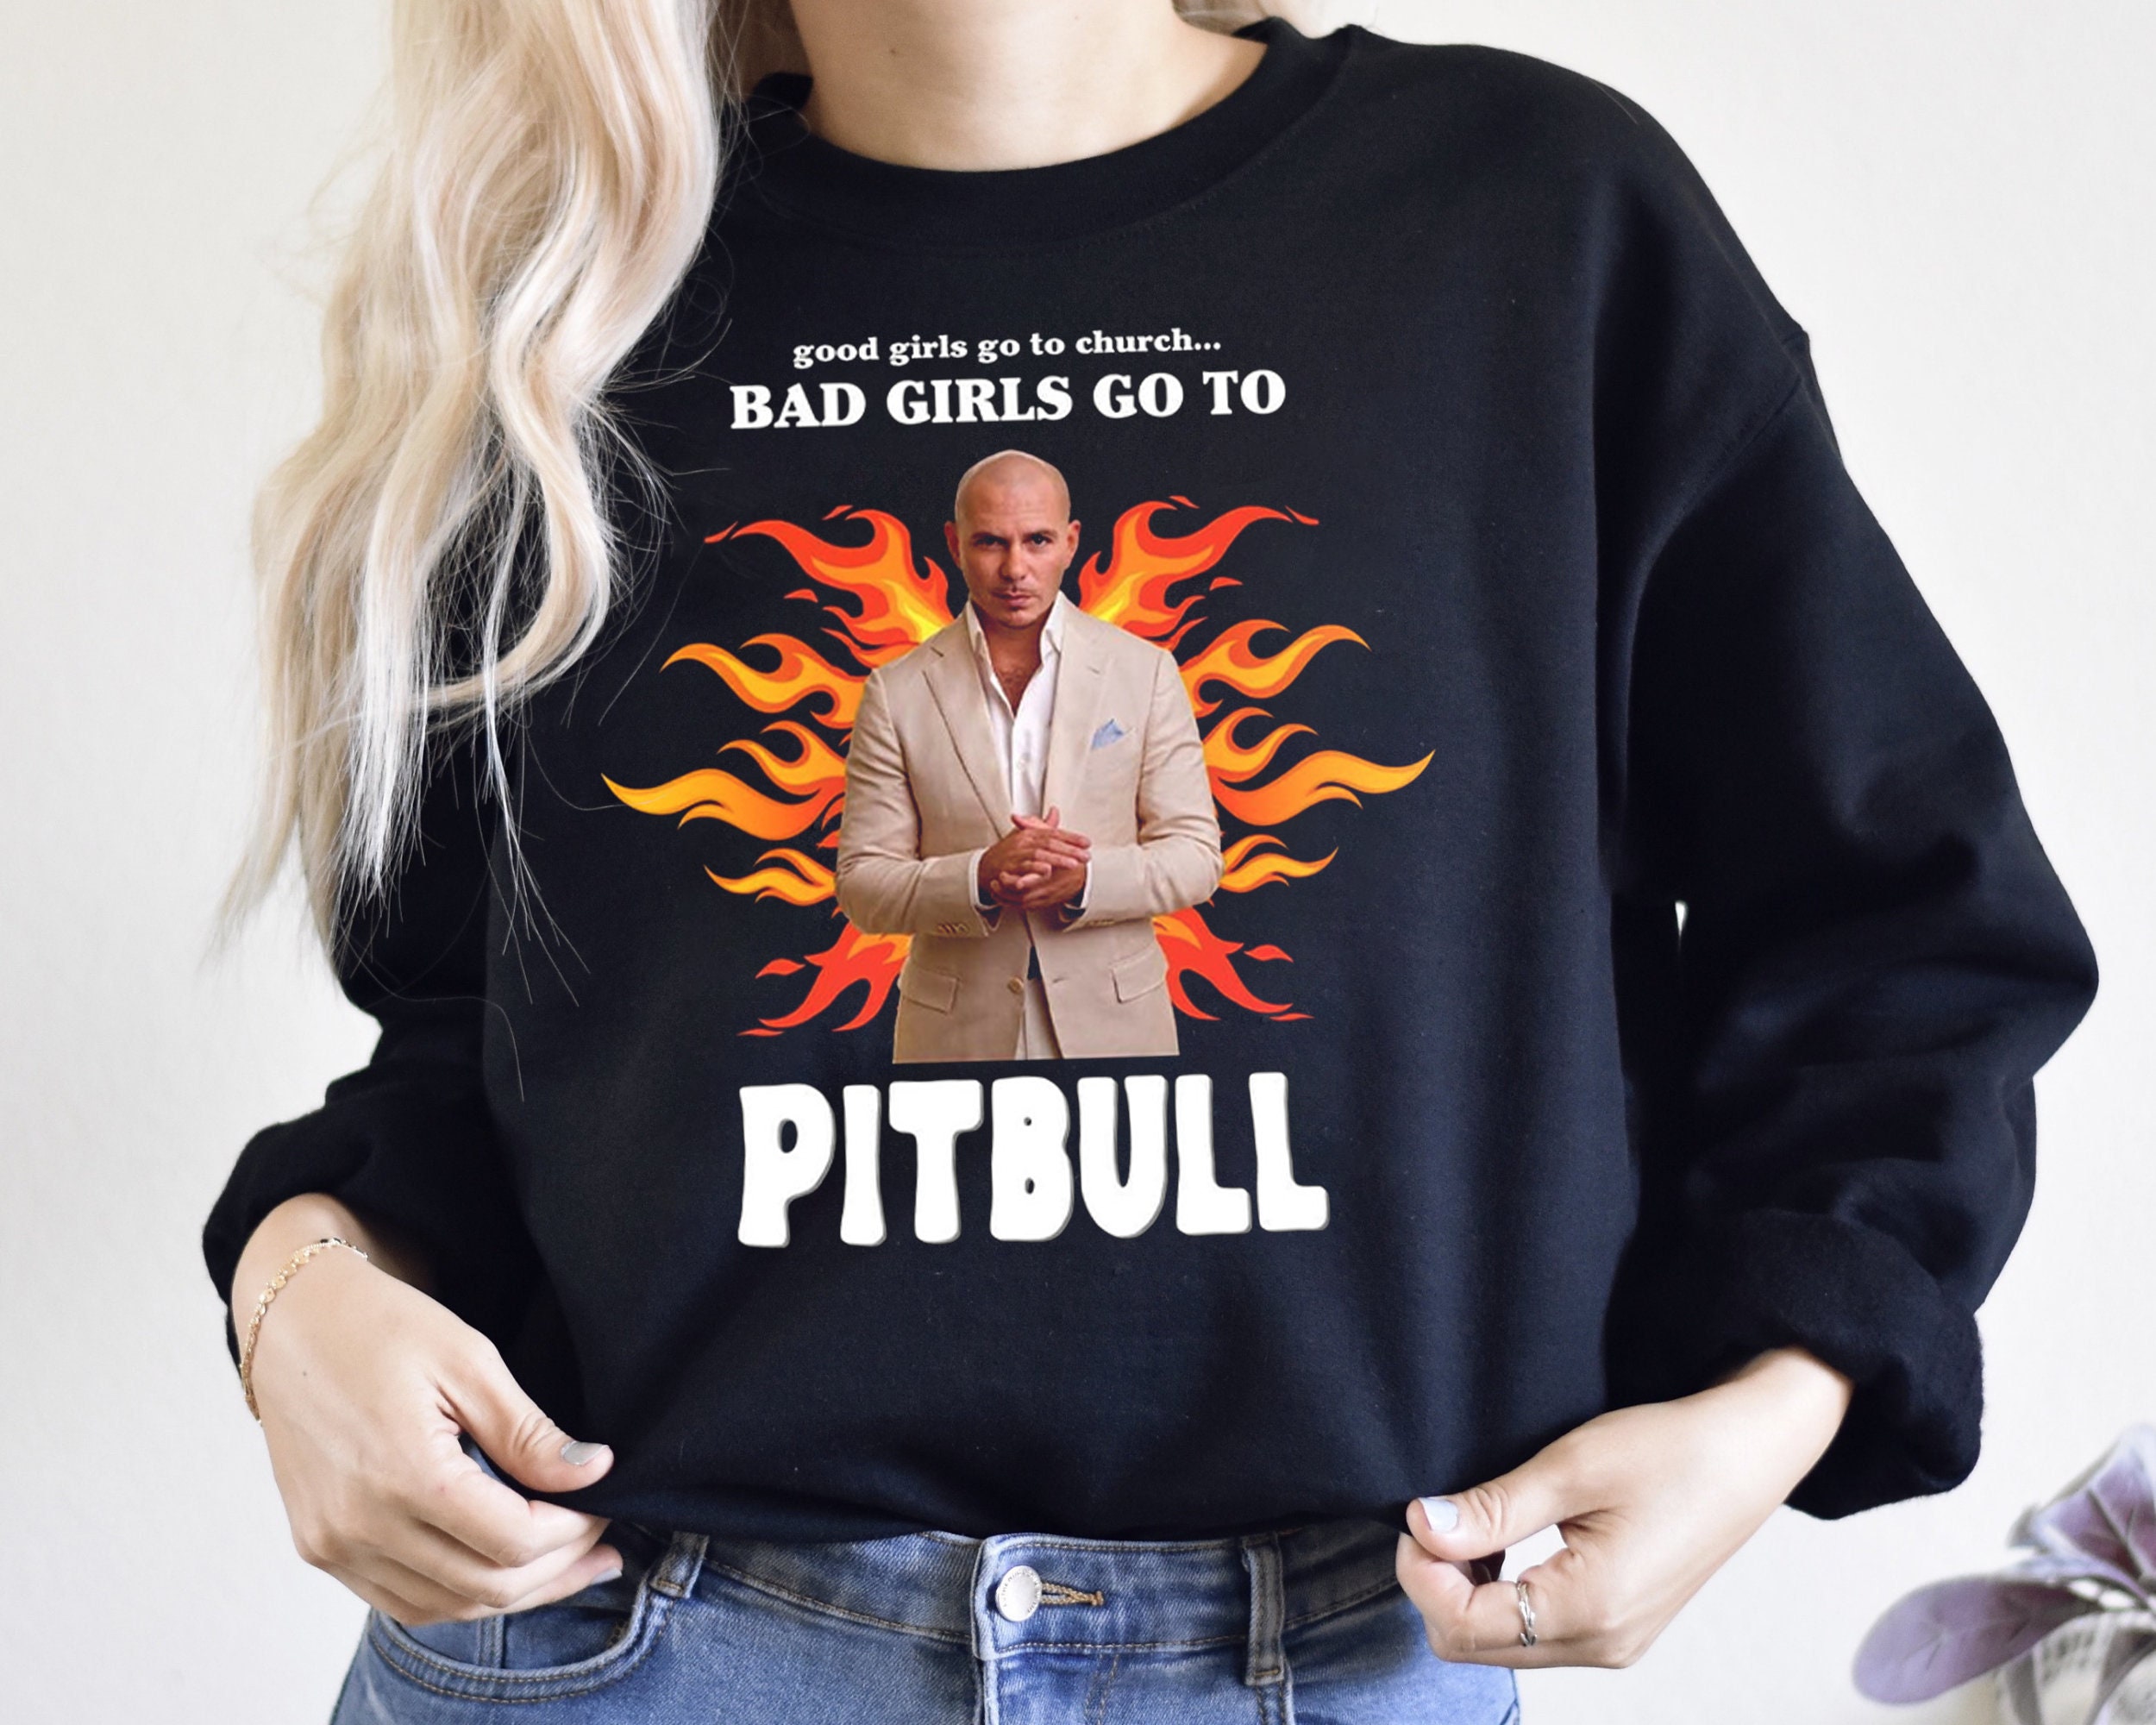 good girls go to church bad girls go to Pitbull Comforter for